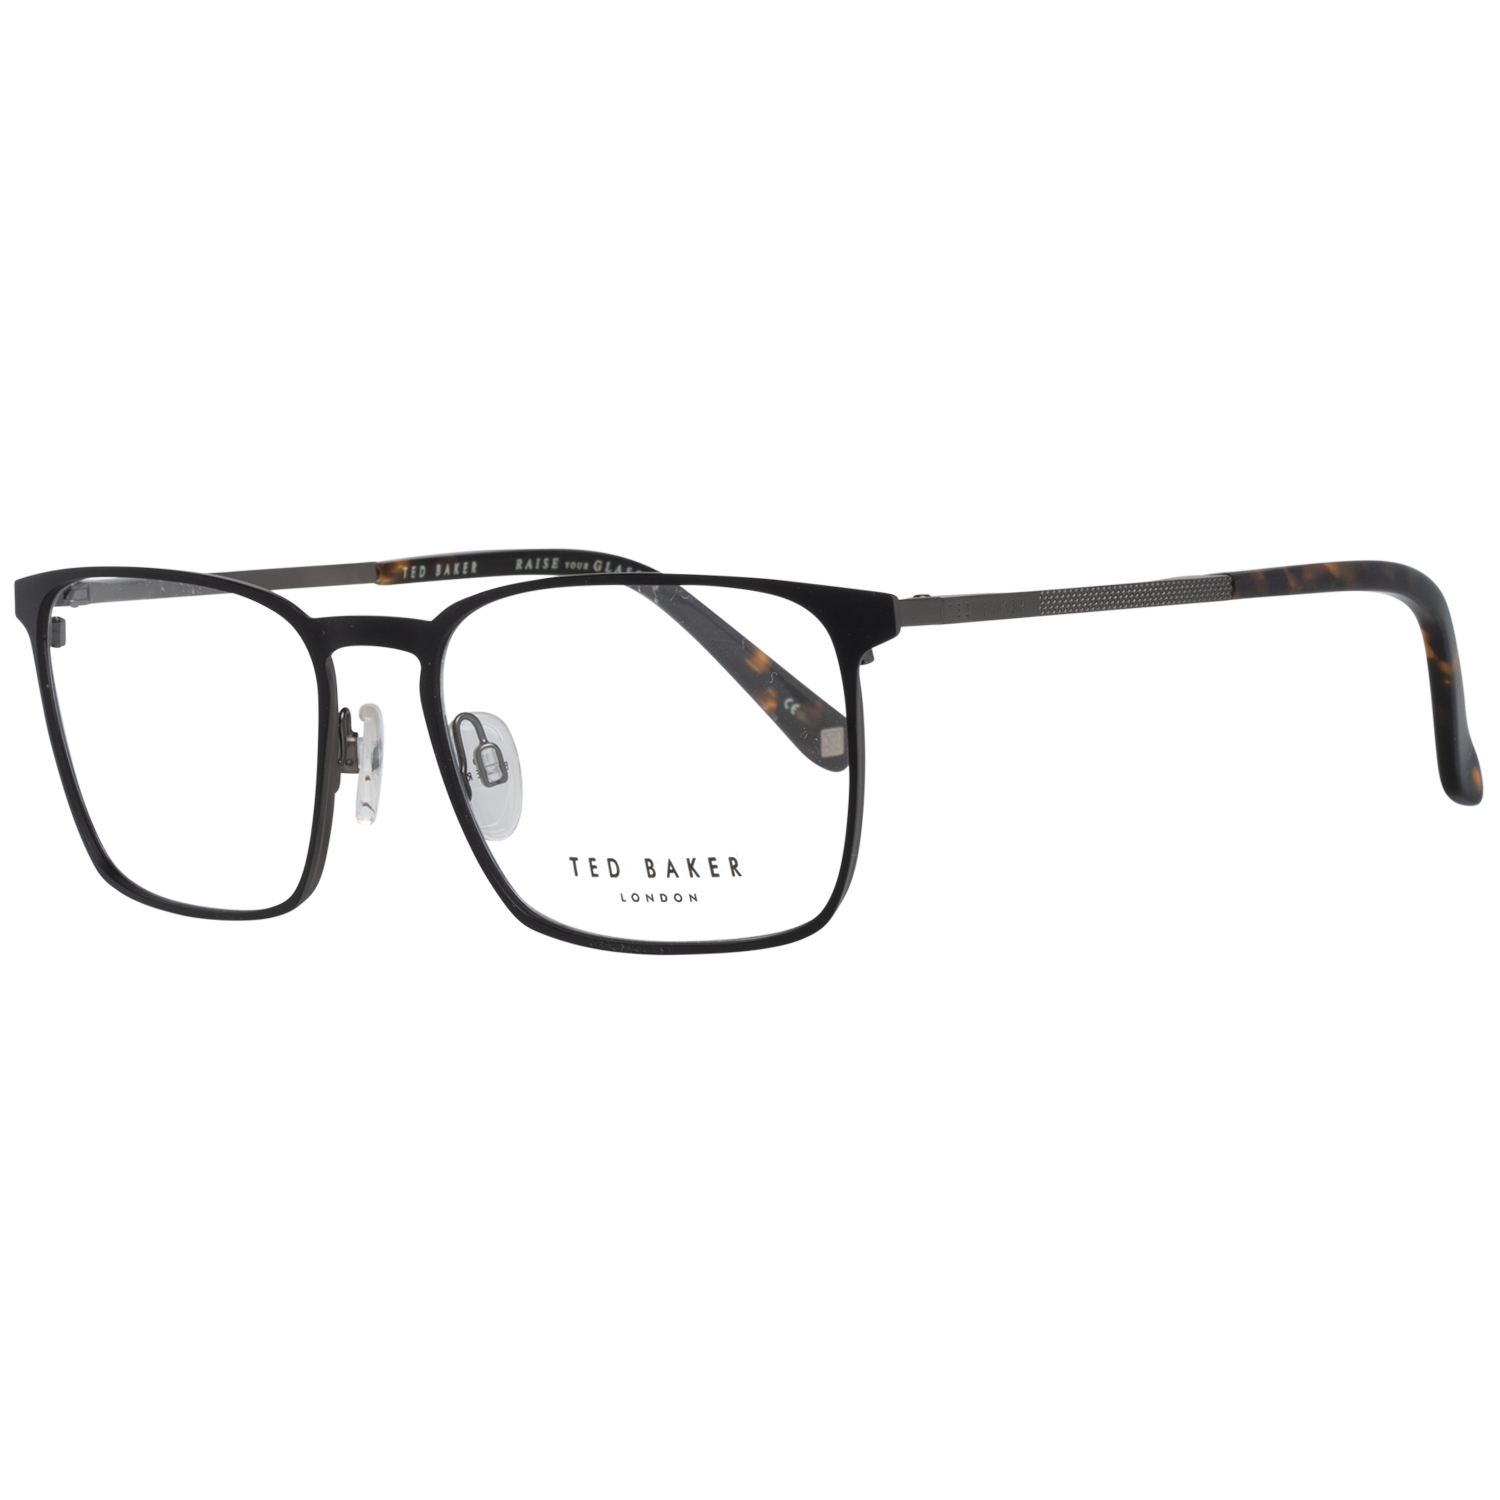 Ted Baker Frames Ted Baker Optical Frame Prescription Glasses TB4270 009 53 Patton Eyeglasses Eyewear UK USA Australia 